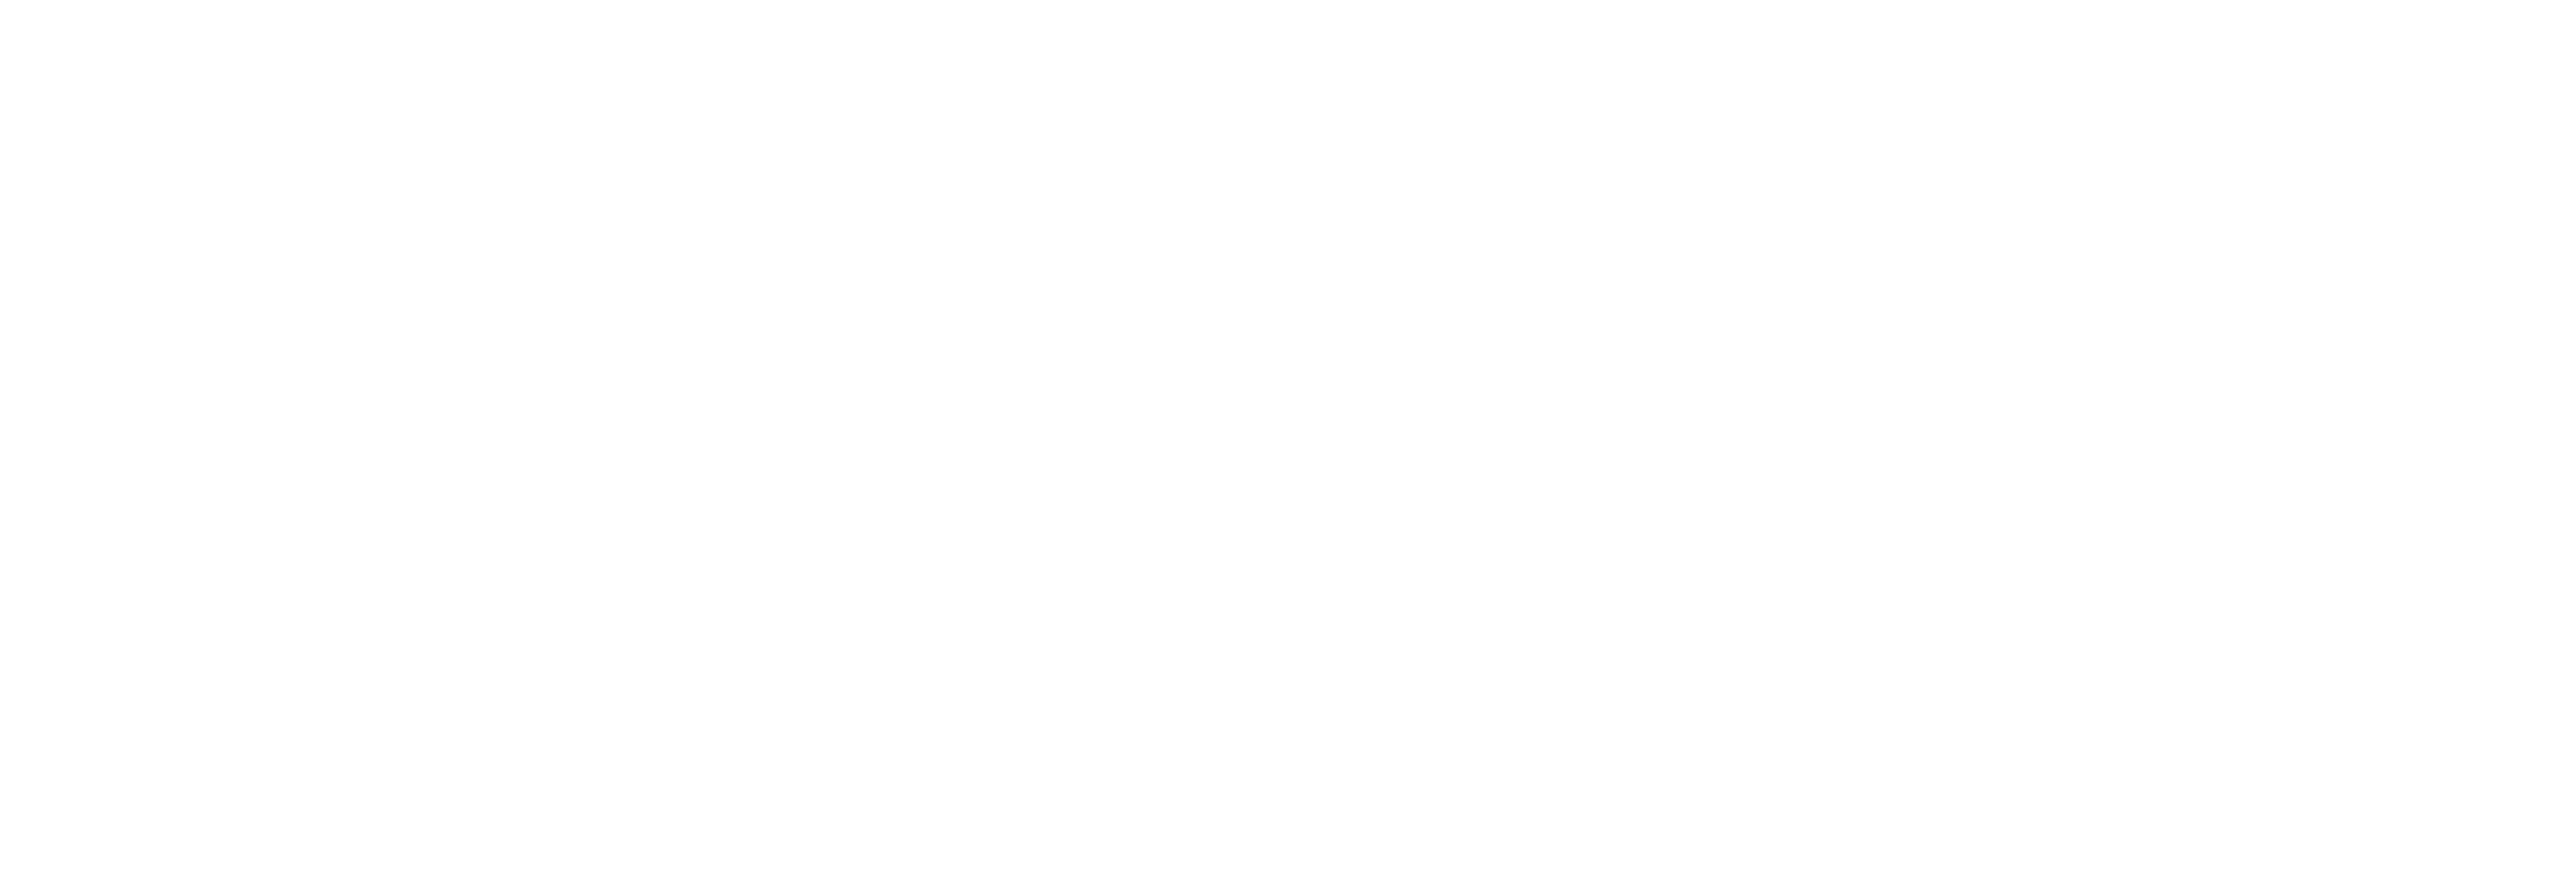 AniCura Eschborn logo